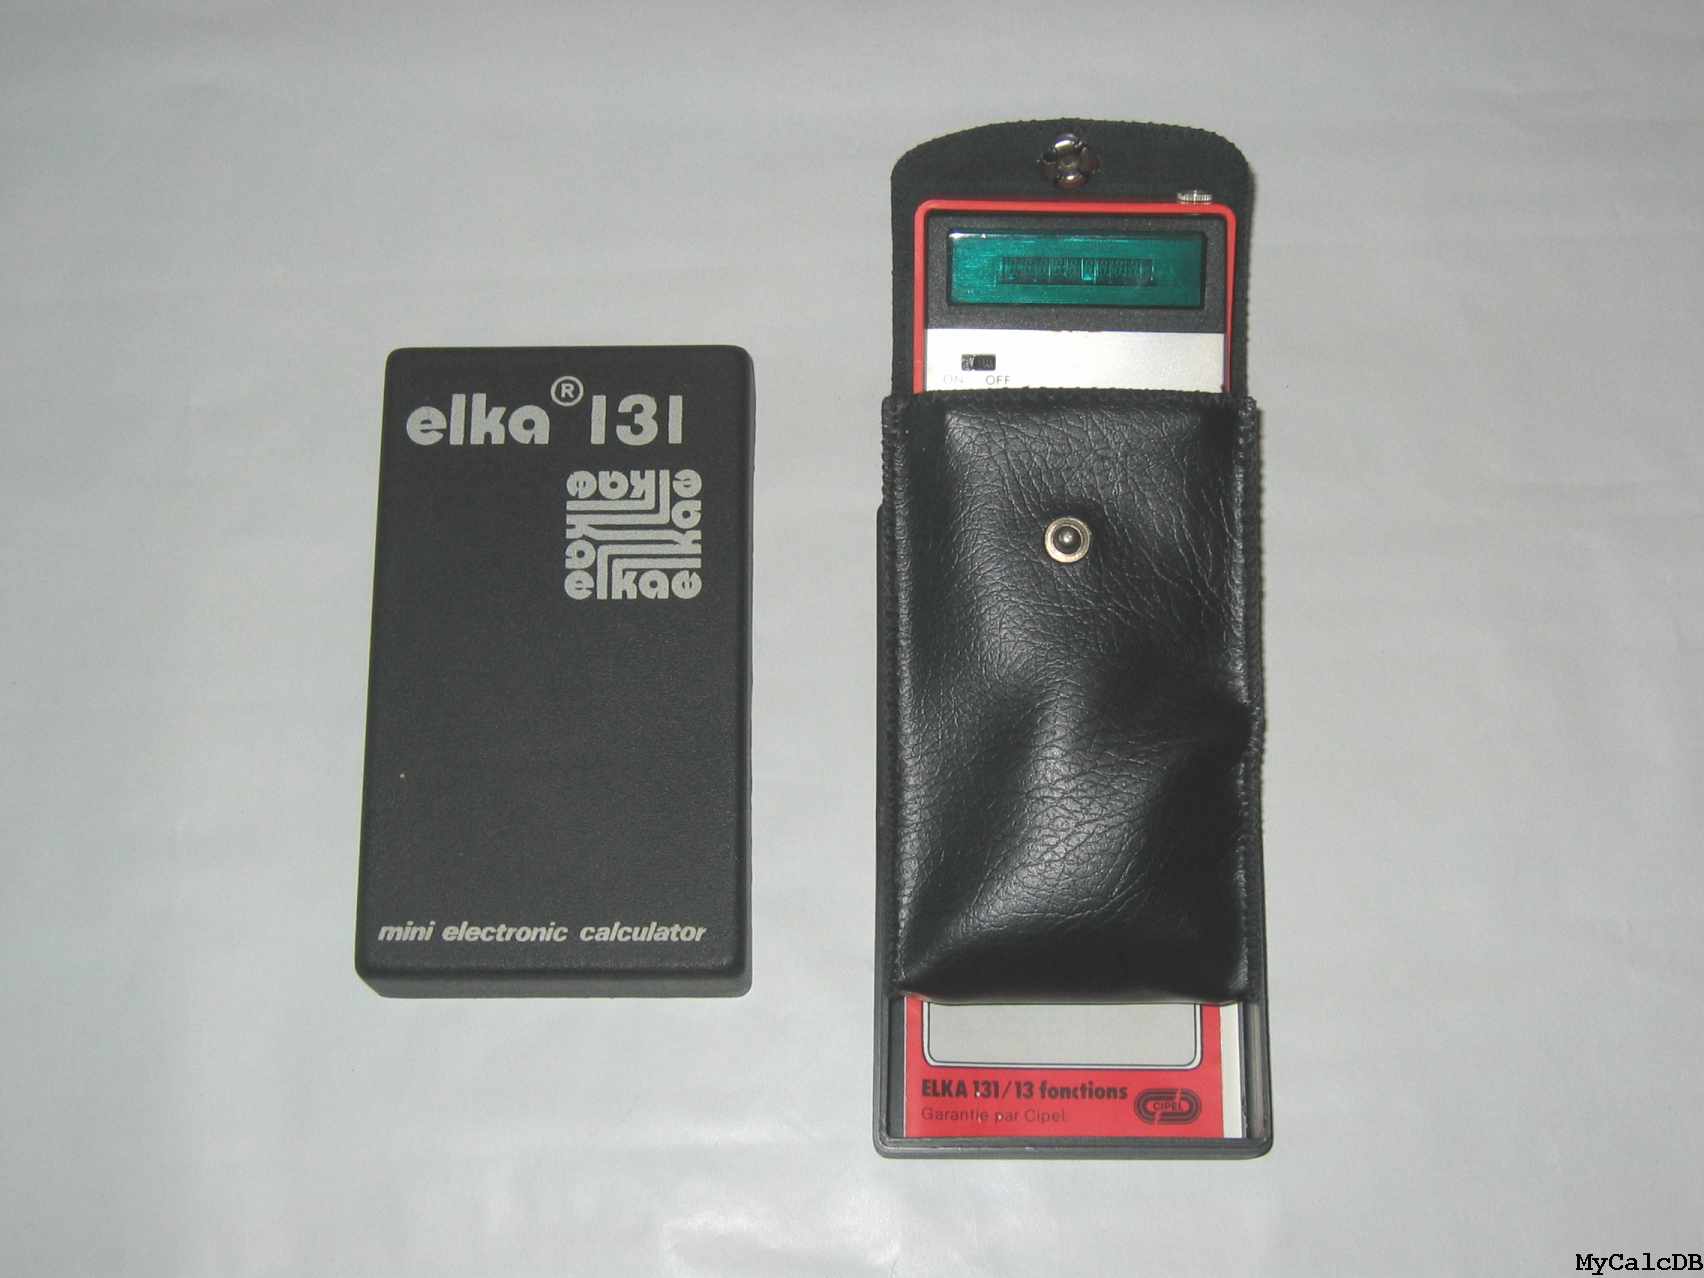 Elka 131